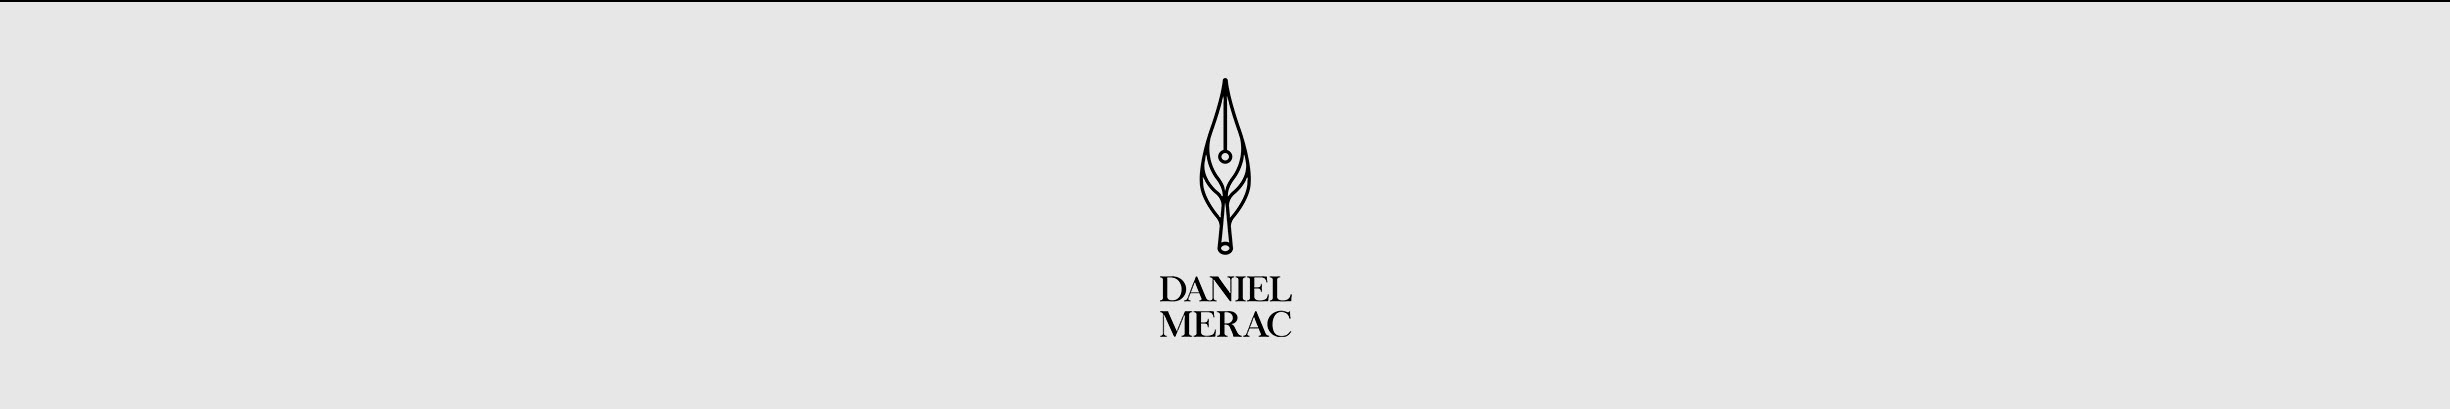 Banner de perfil de Daniel Merac